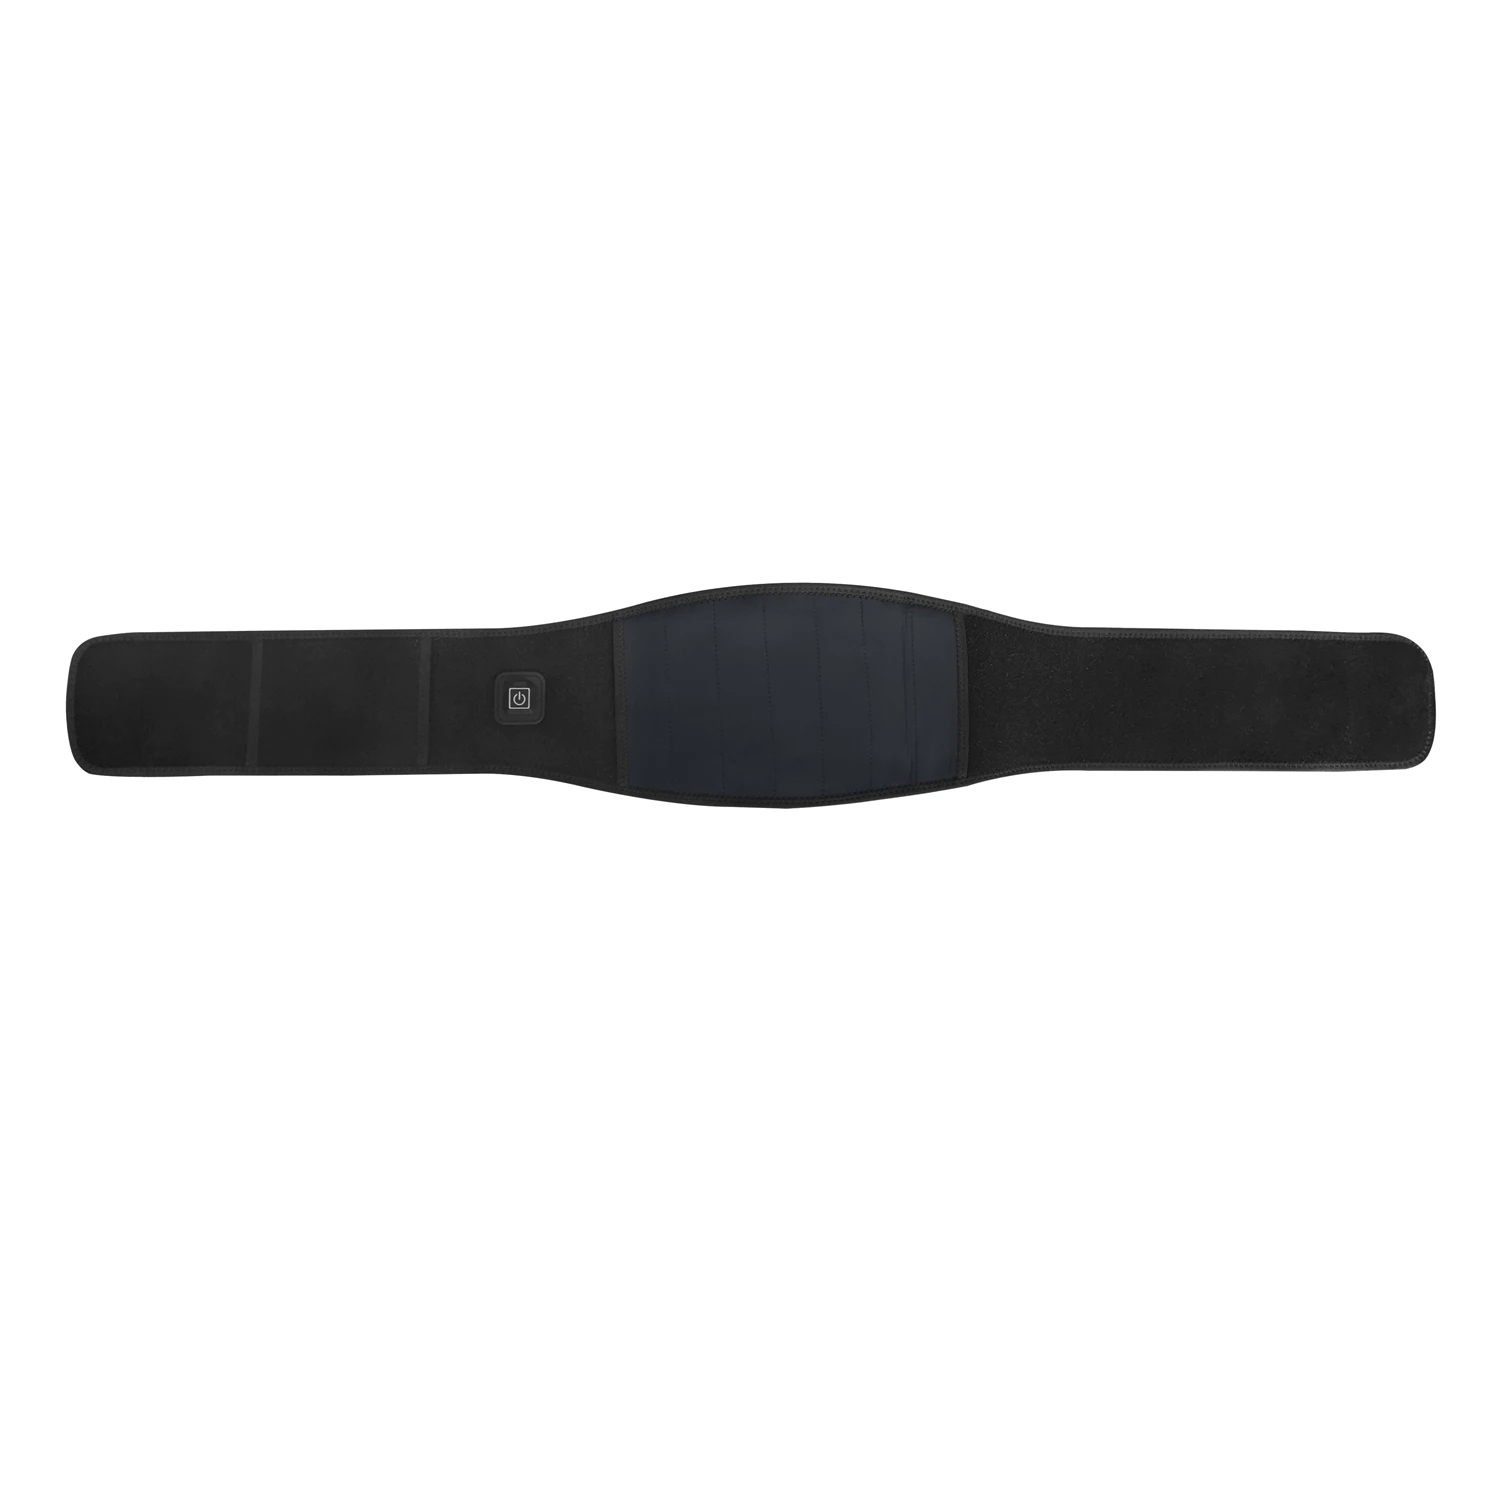 Heated waist belt for Waist Health Care Adjustable Rechargeable Lumbar Waist Brace Massage Band Back Support Belt